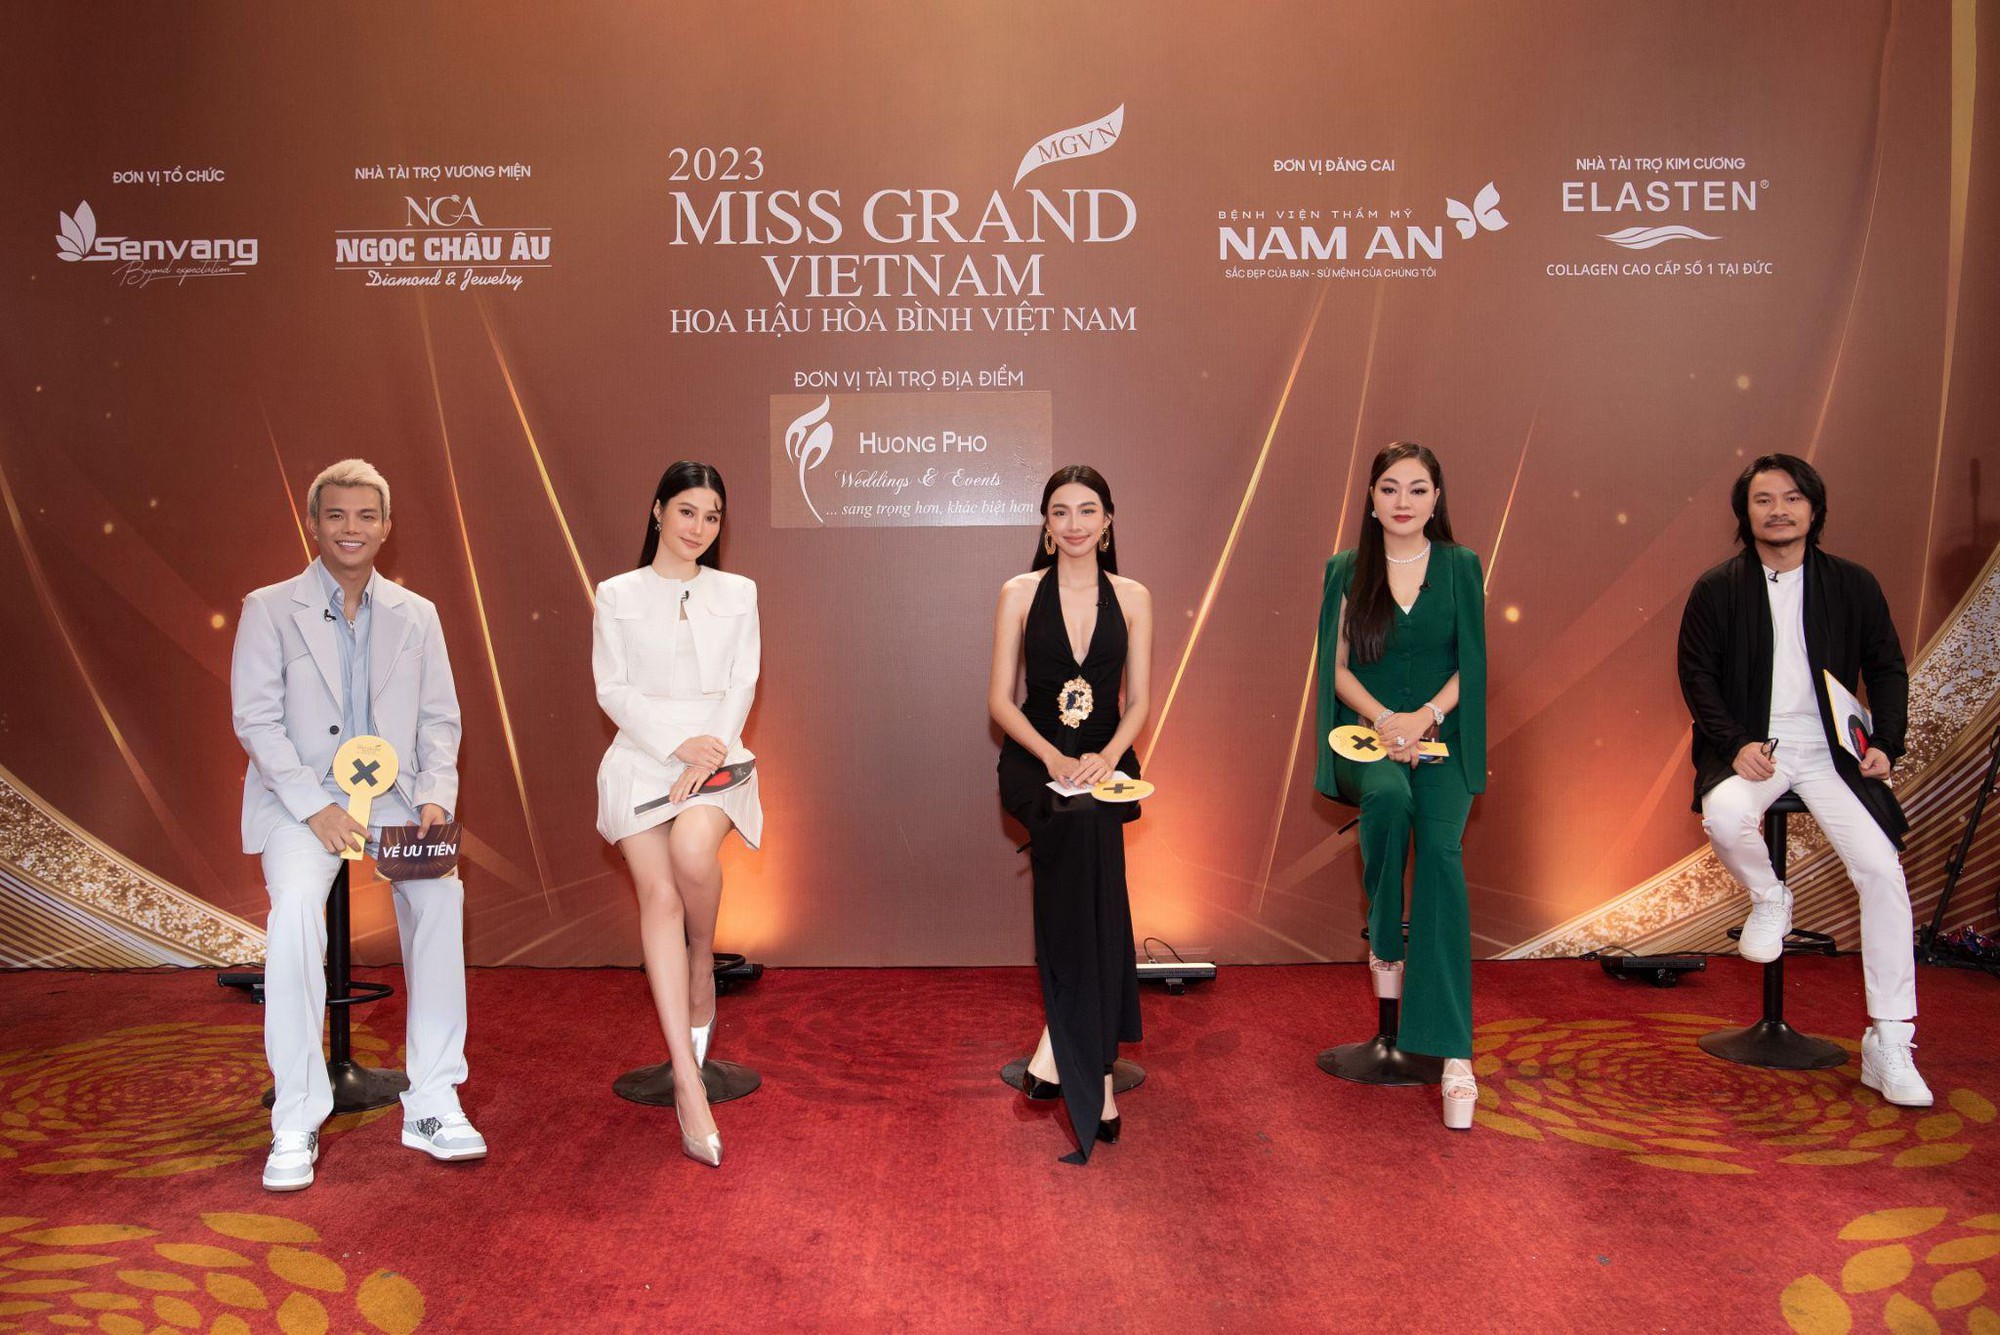 Hoa hậu Hoàng Thanh Nga cùng Ngọc Châu Âu tìm kiếm vương miện Miss Grand Vietnam 2023 - Ảnh 3.